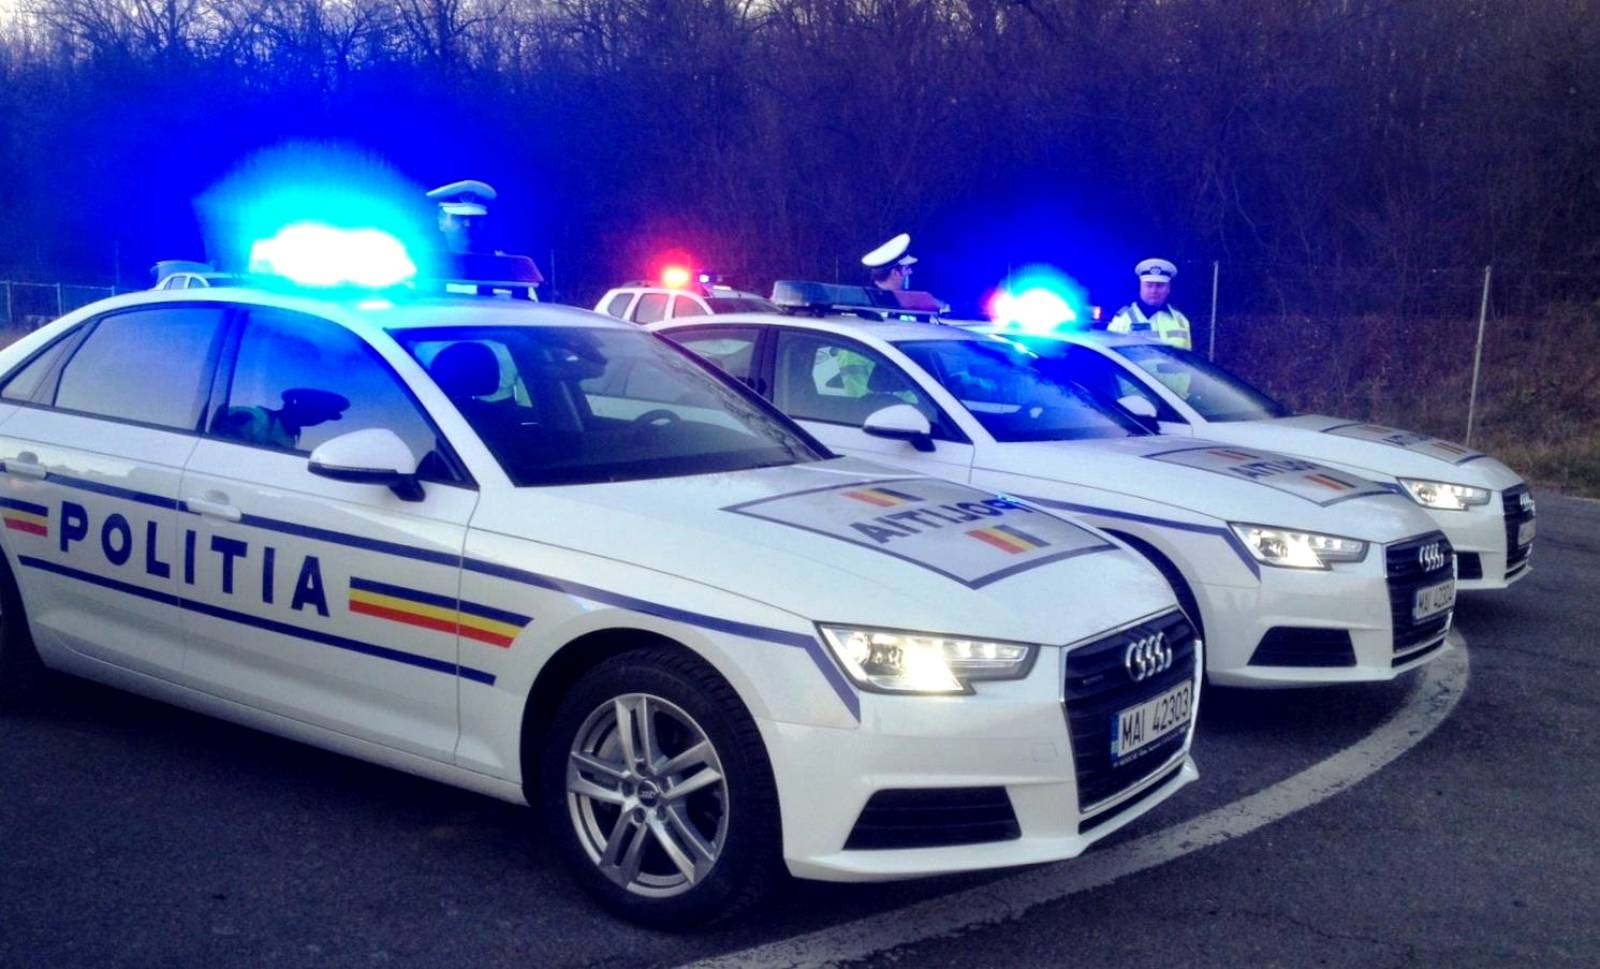 Viajes de Semana Santa de la policía rumana